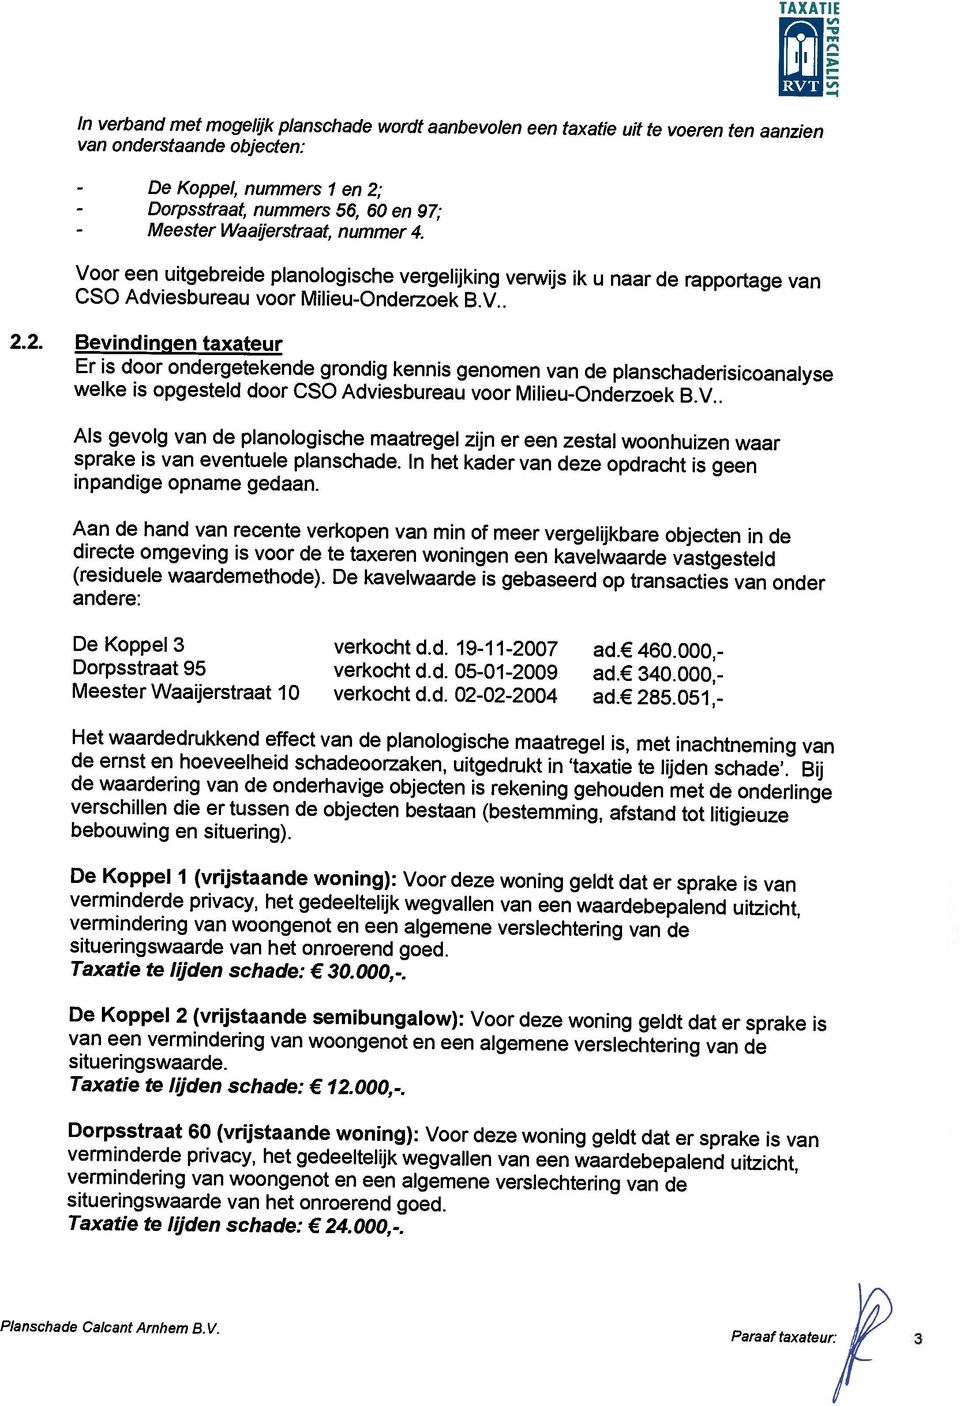 algemene verslechtering van de situeringswaarde van het onroerend goed. Taxatie te lijden schade: 24.000,-. Planschade Calcant Arnhem BV.